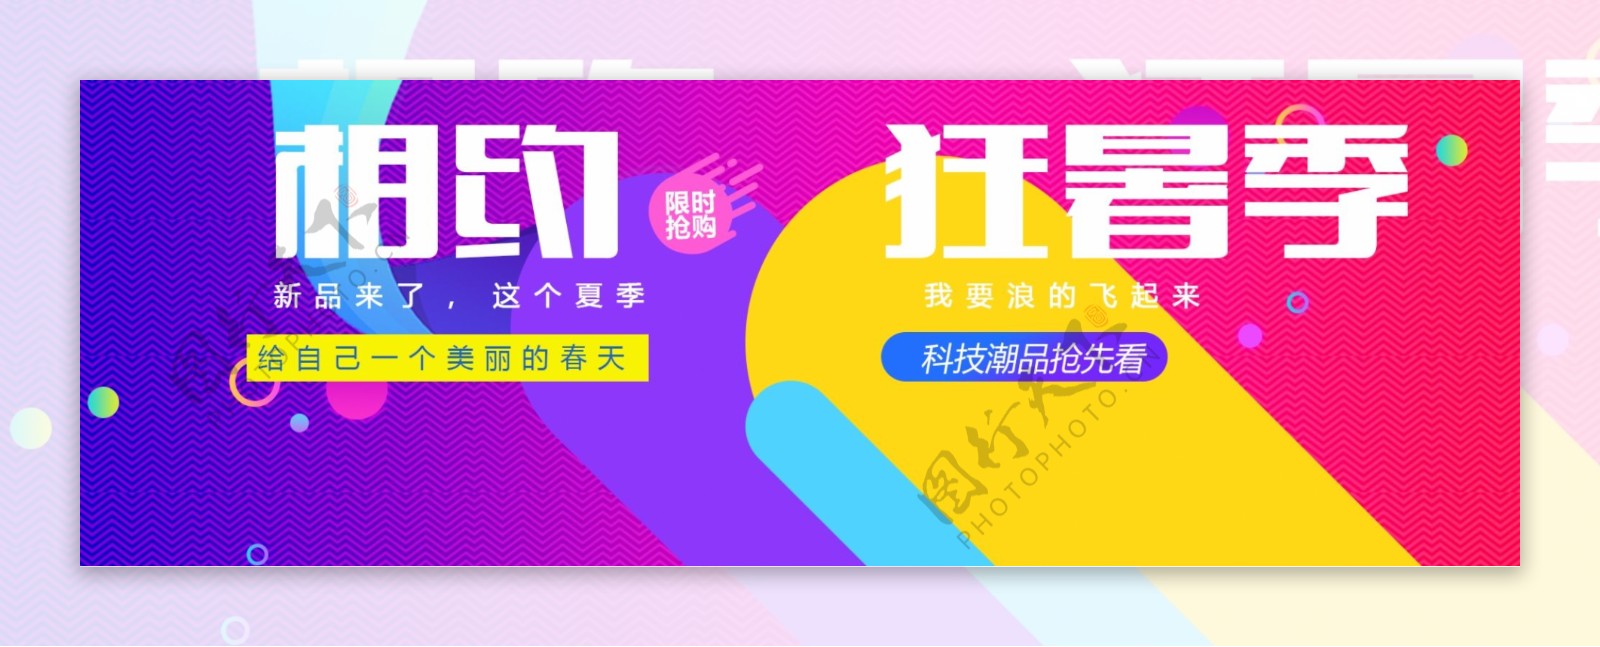 电商淘宝天猫狂暑季夏日促销海报PSD模板